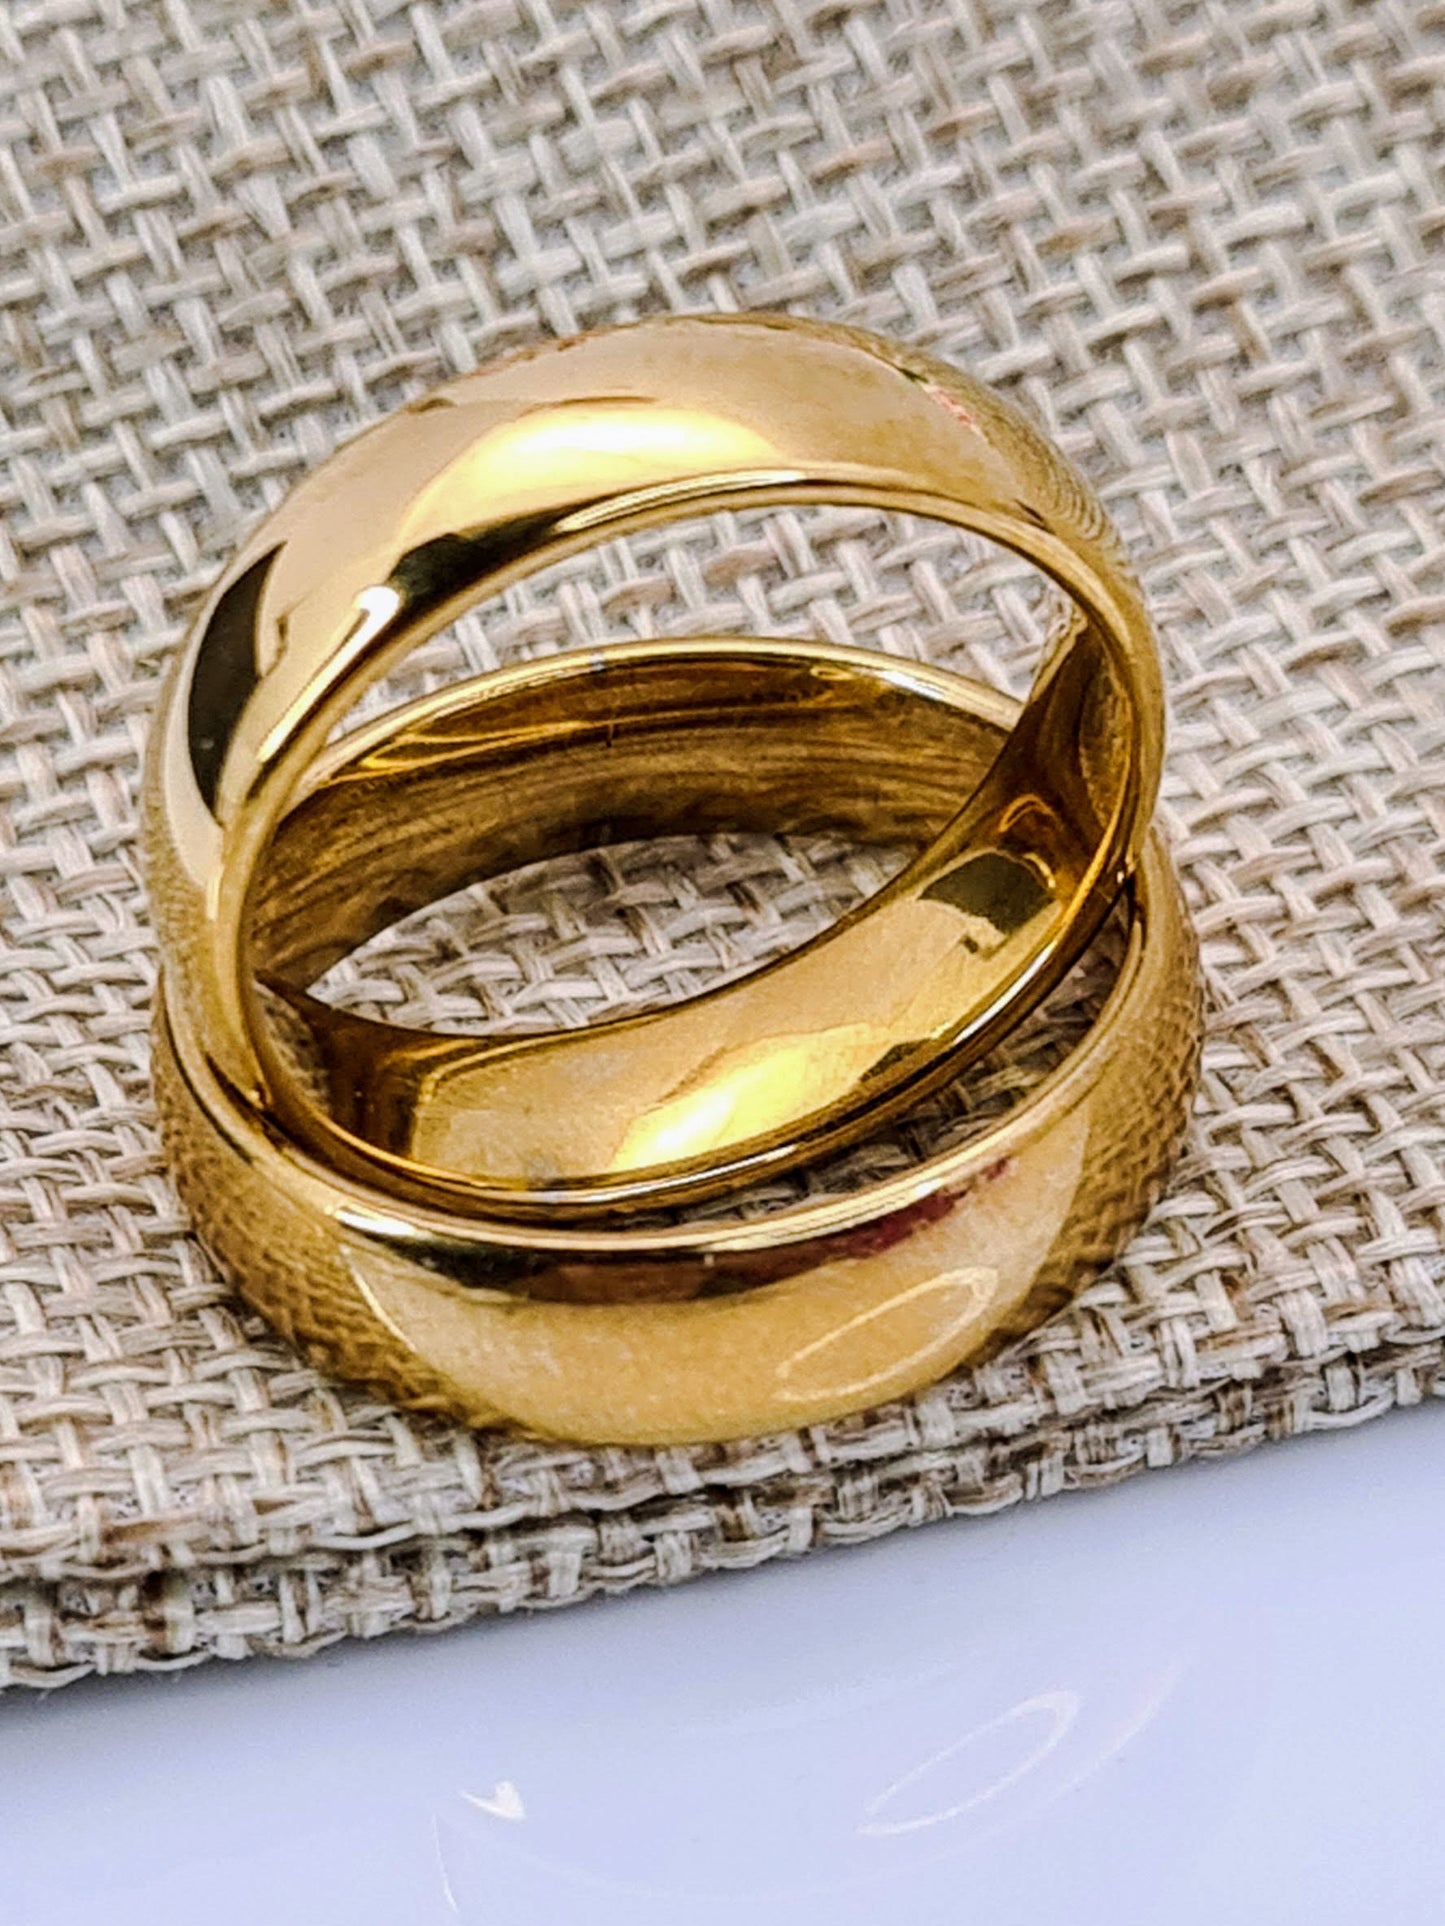 Par de Anillos tipo alianza de matrimonio o pareja en acero inoxidable en color dorado y ancho de 6mm sobre un saquito de arpillera. Se incluye grabado de nombres y fecha importante gratis.